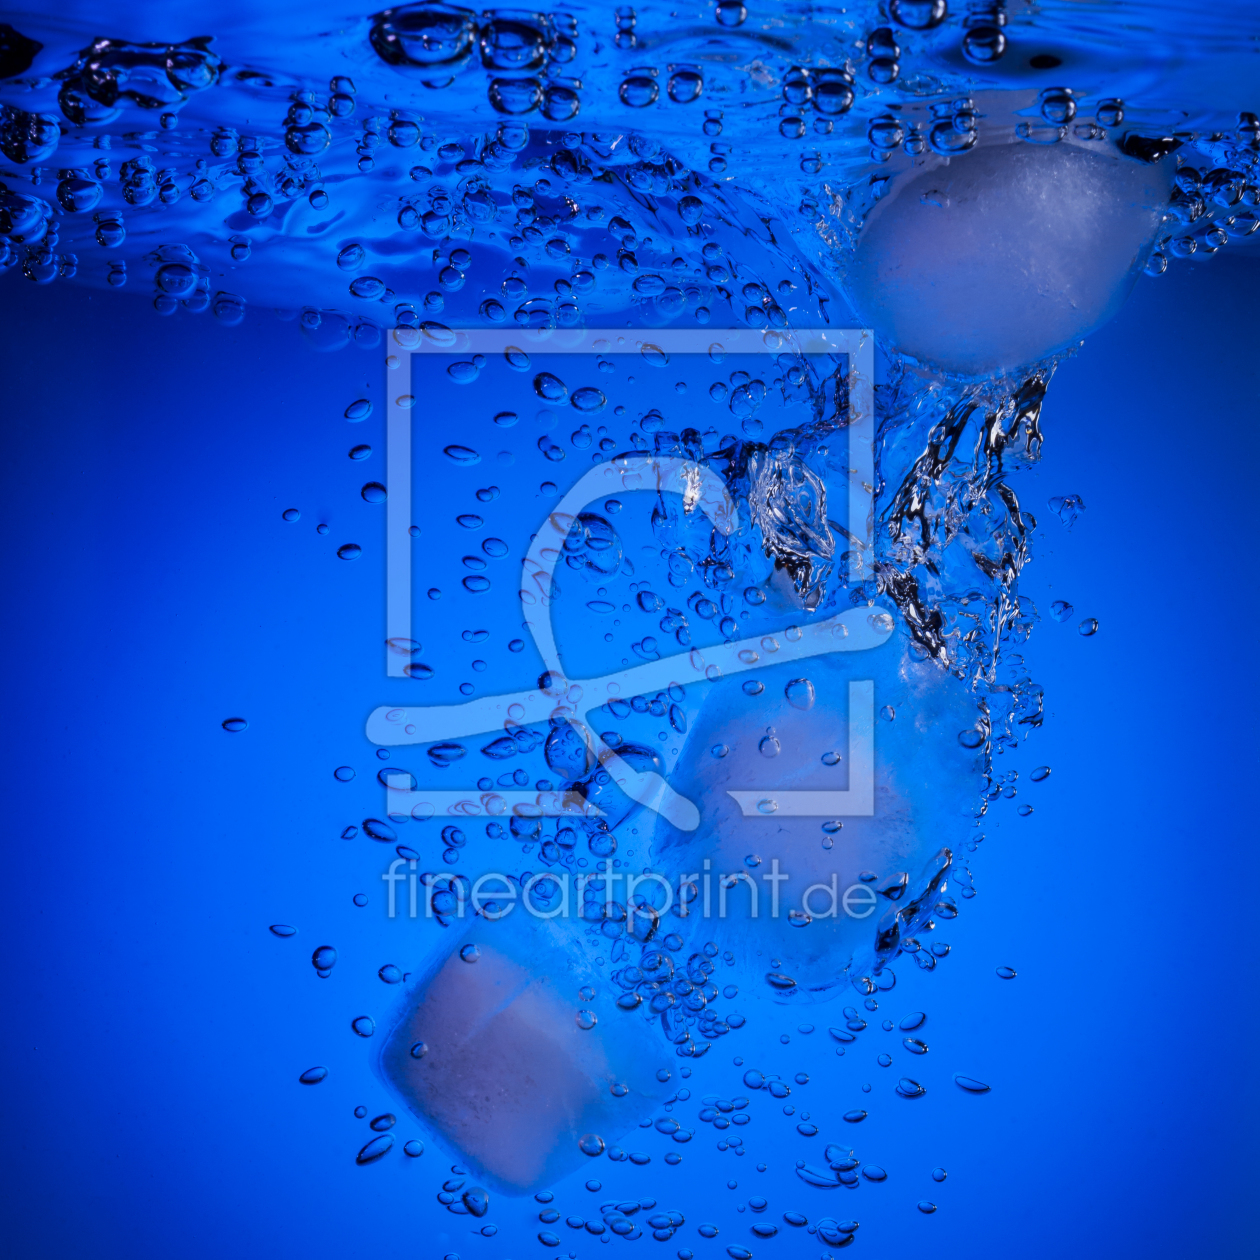 Bild-Nr.: 11404873 cool water blue erstellt von Richard-Young